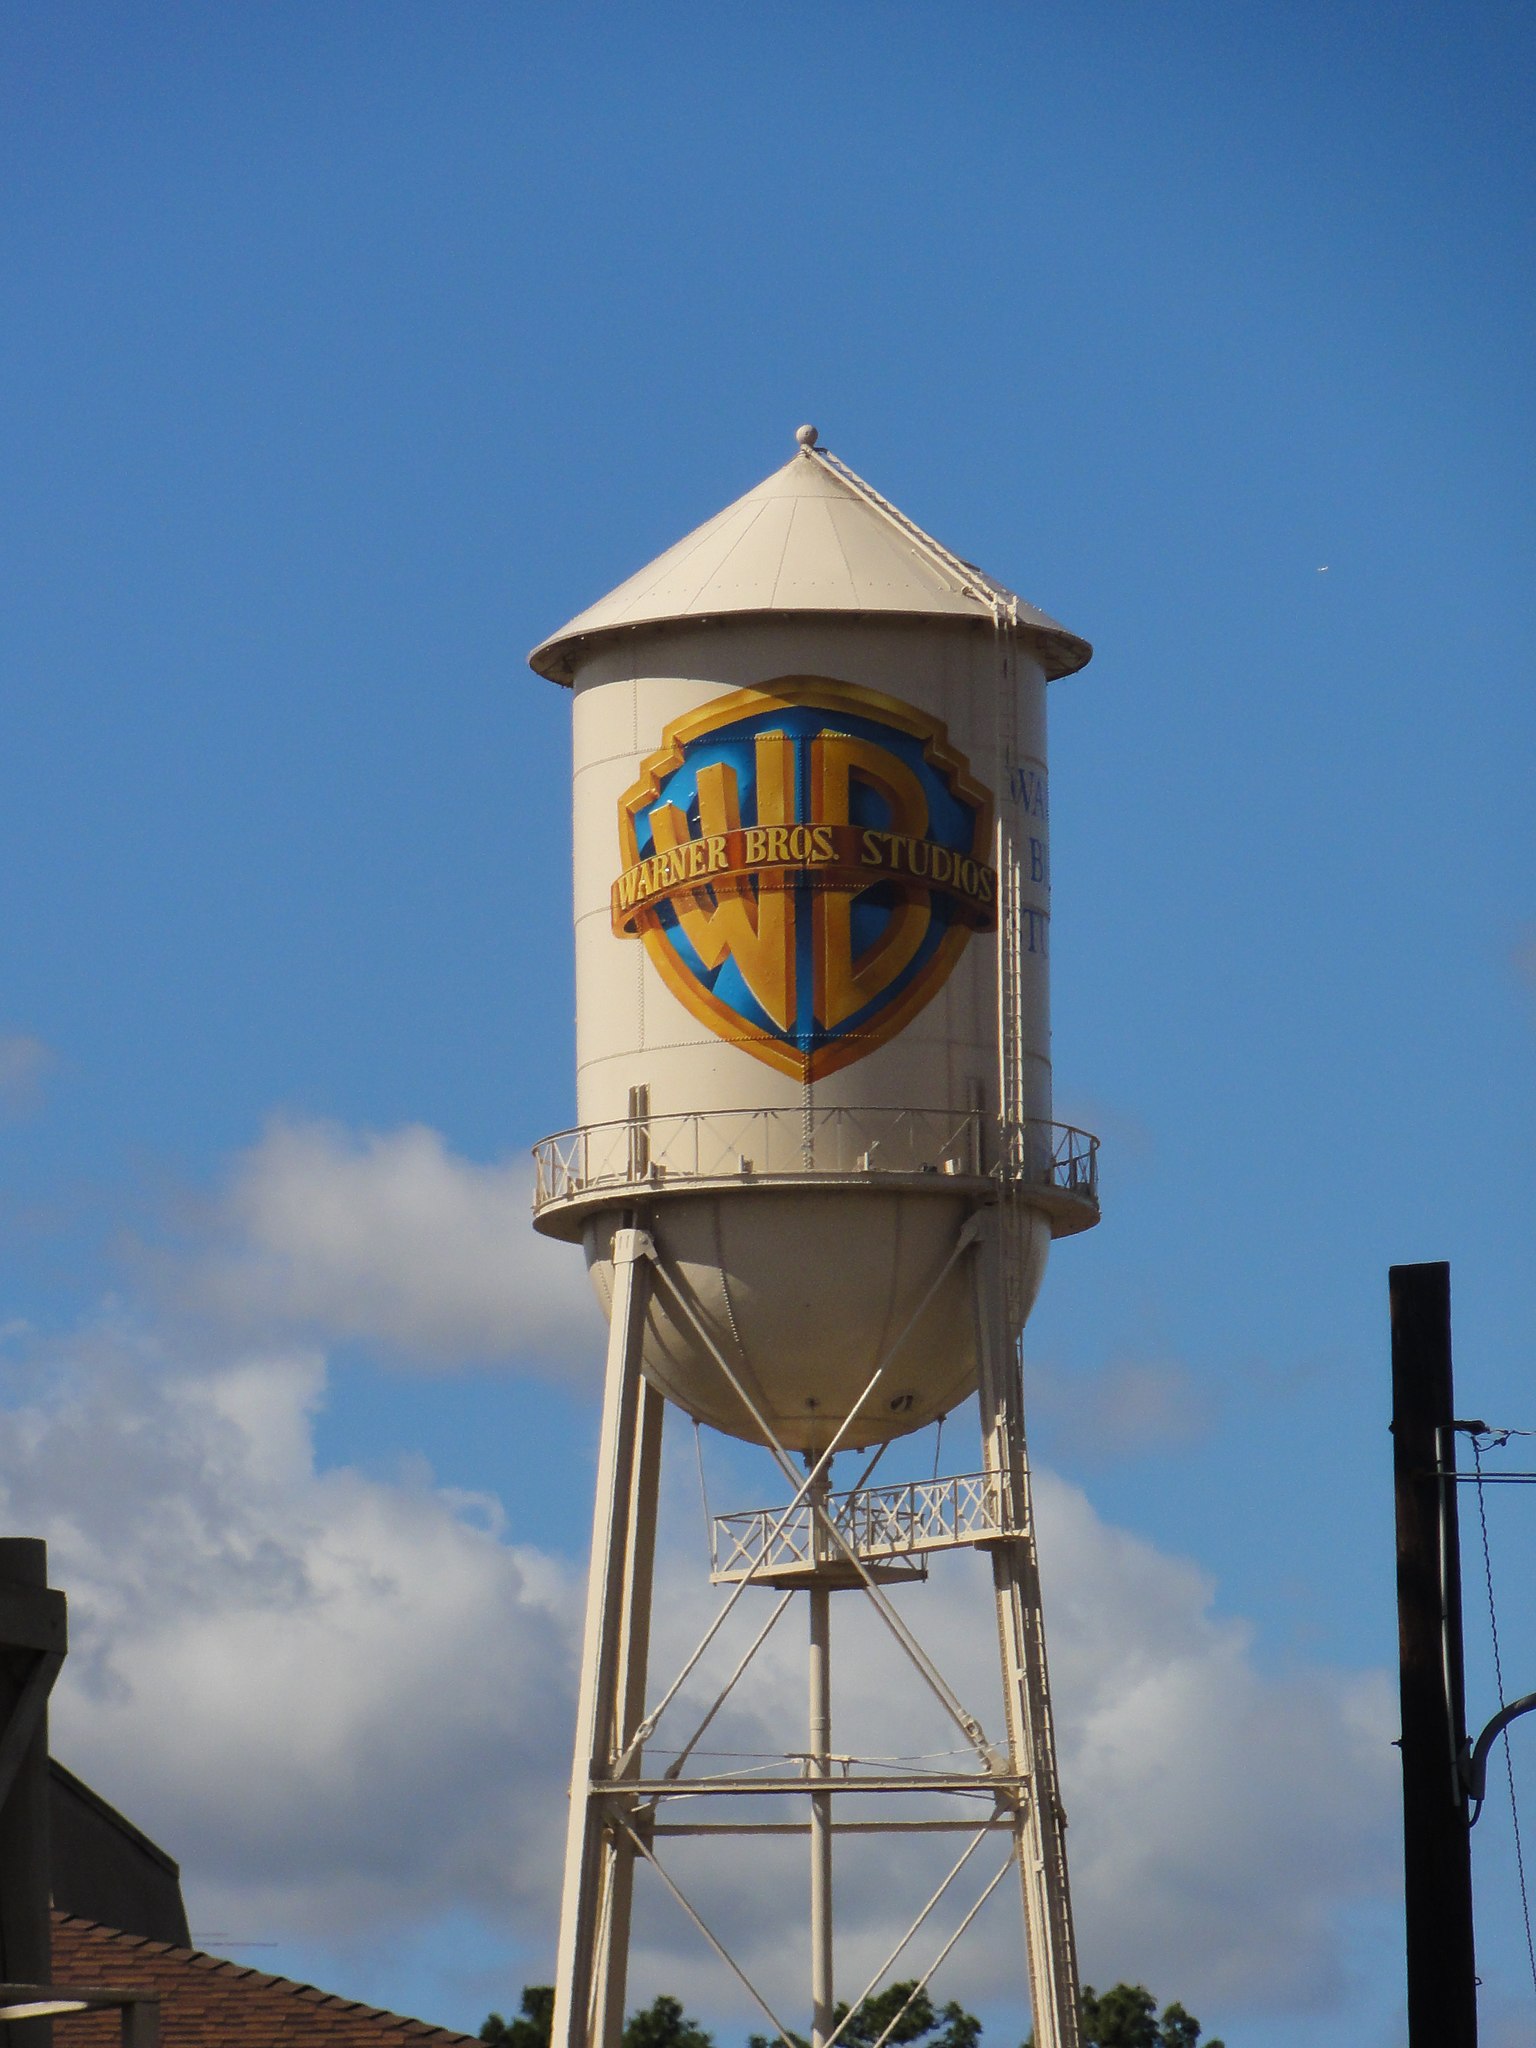 File:Warner Bros Water Tower - panoramio.jpg - Wikimedia Commons